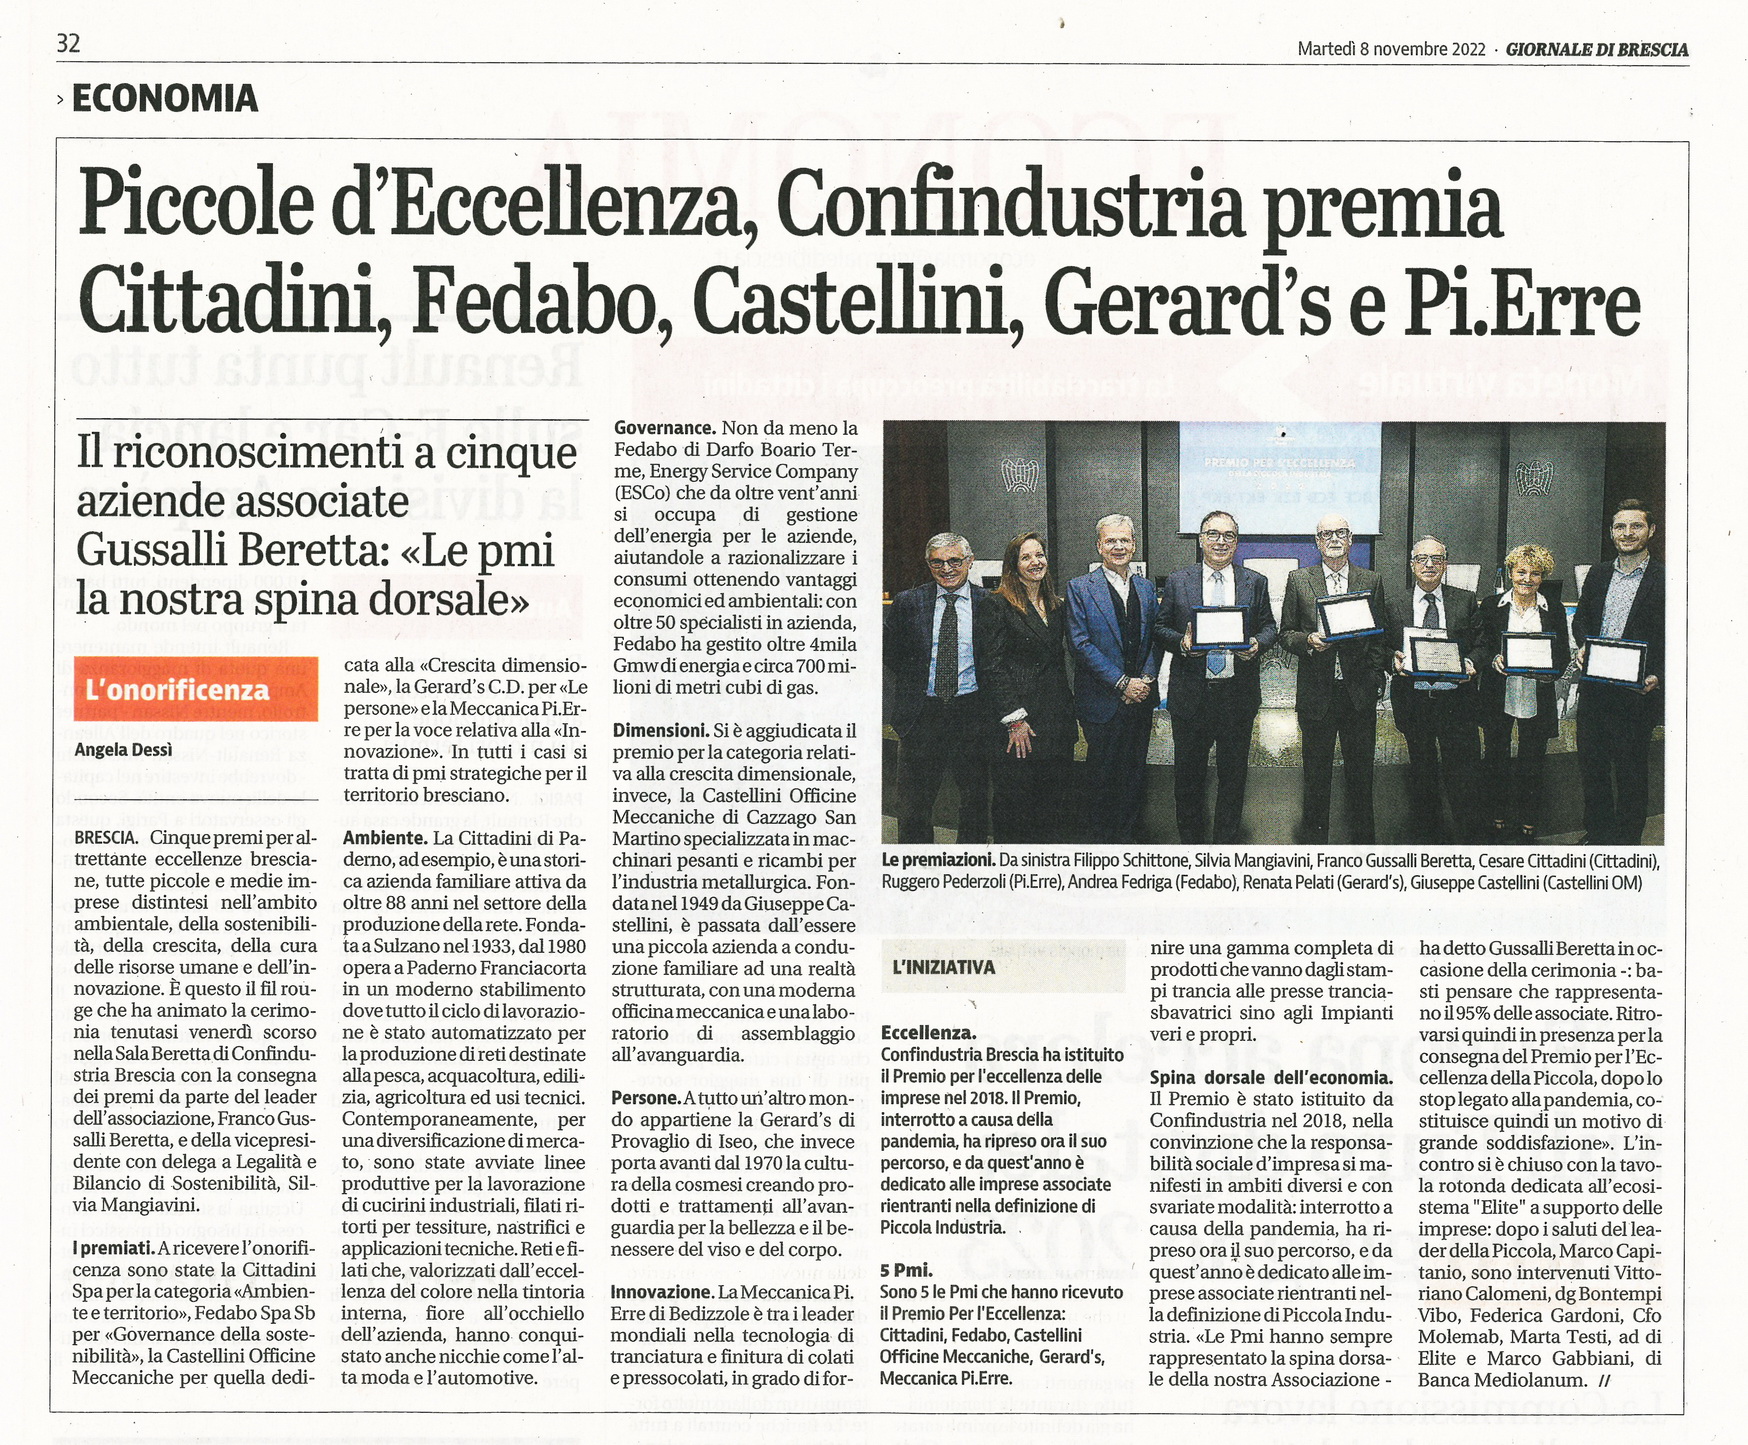 Giornale di Brescia - Premio Eccellenza PMI 2022